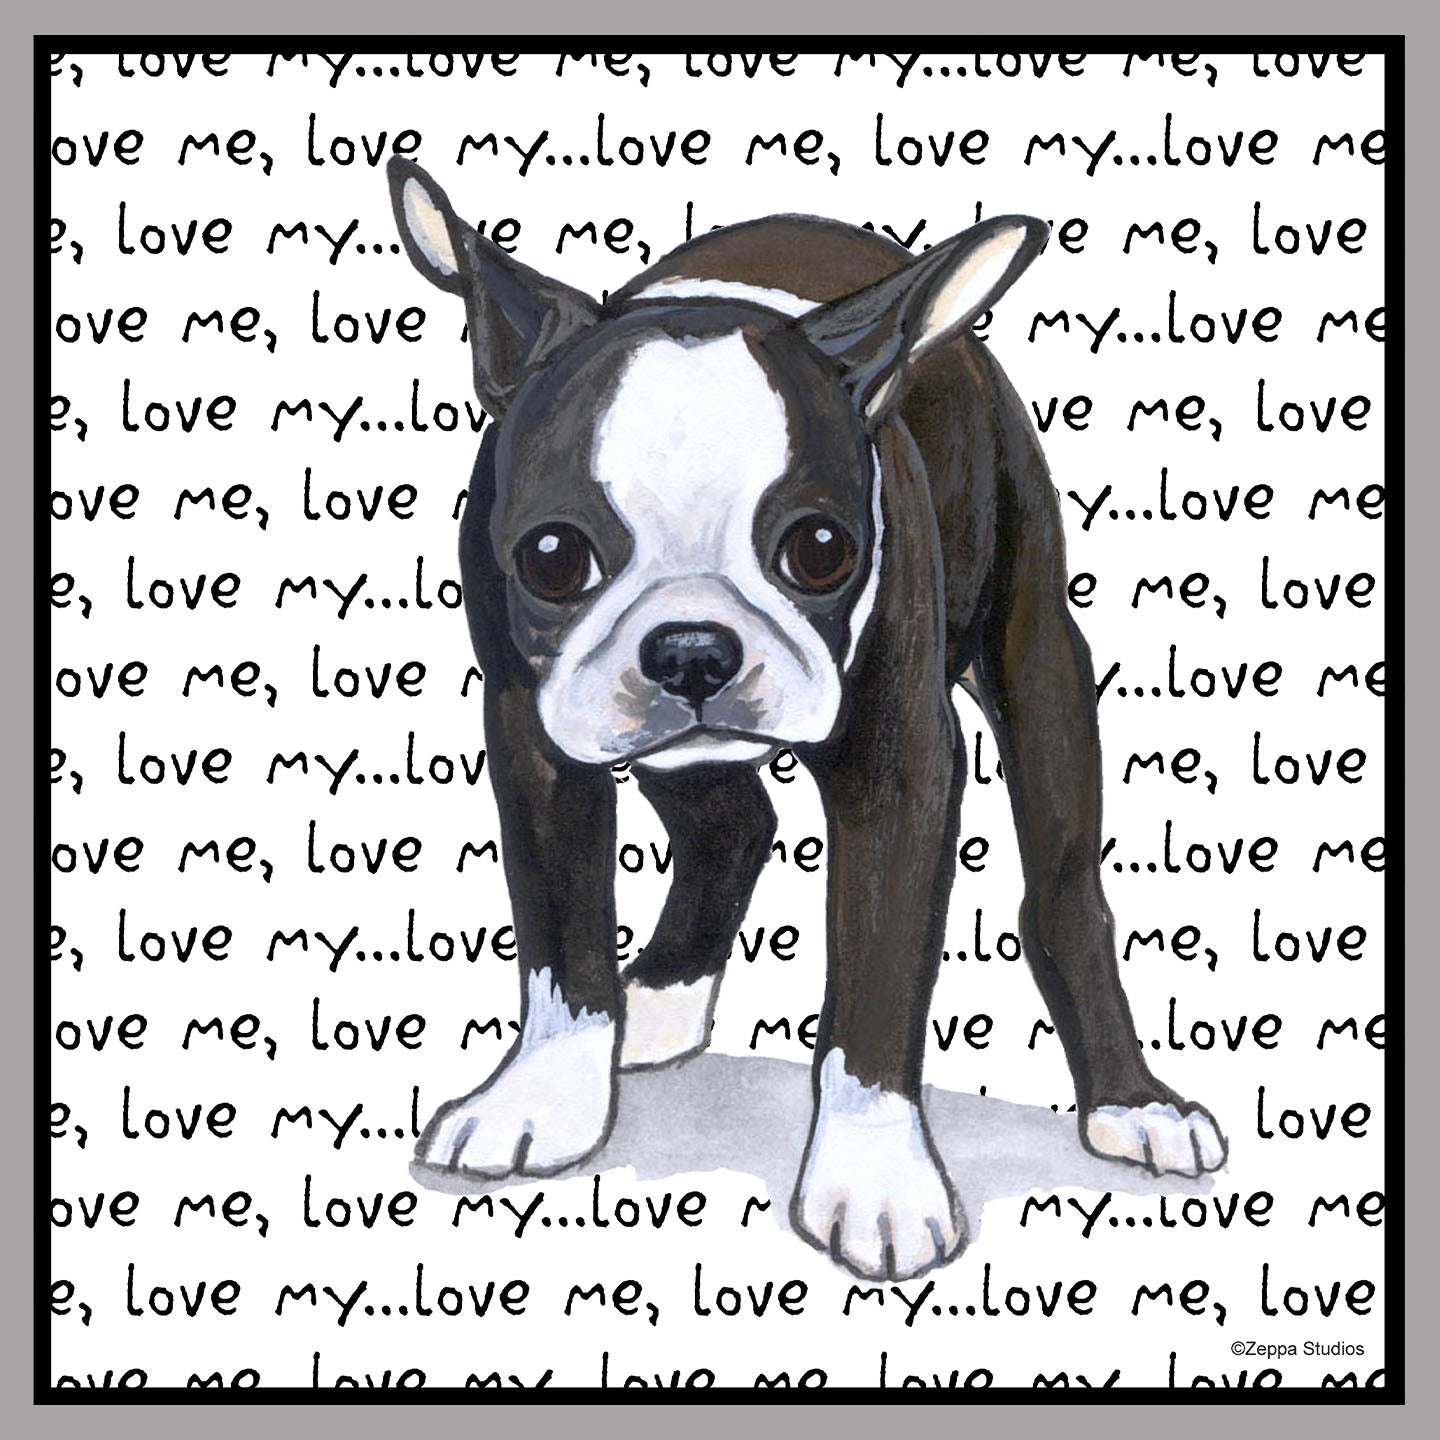 Boston Terrier Love Text - Women's V-Neck Long Sleeve T-Shirt